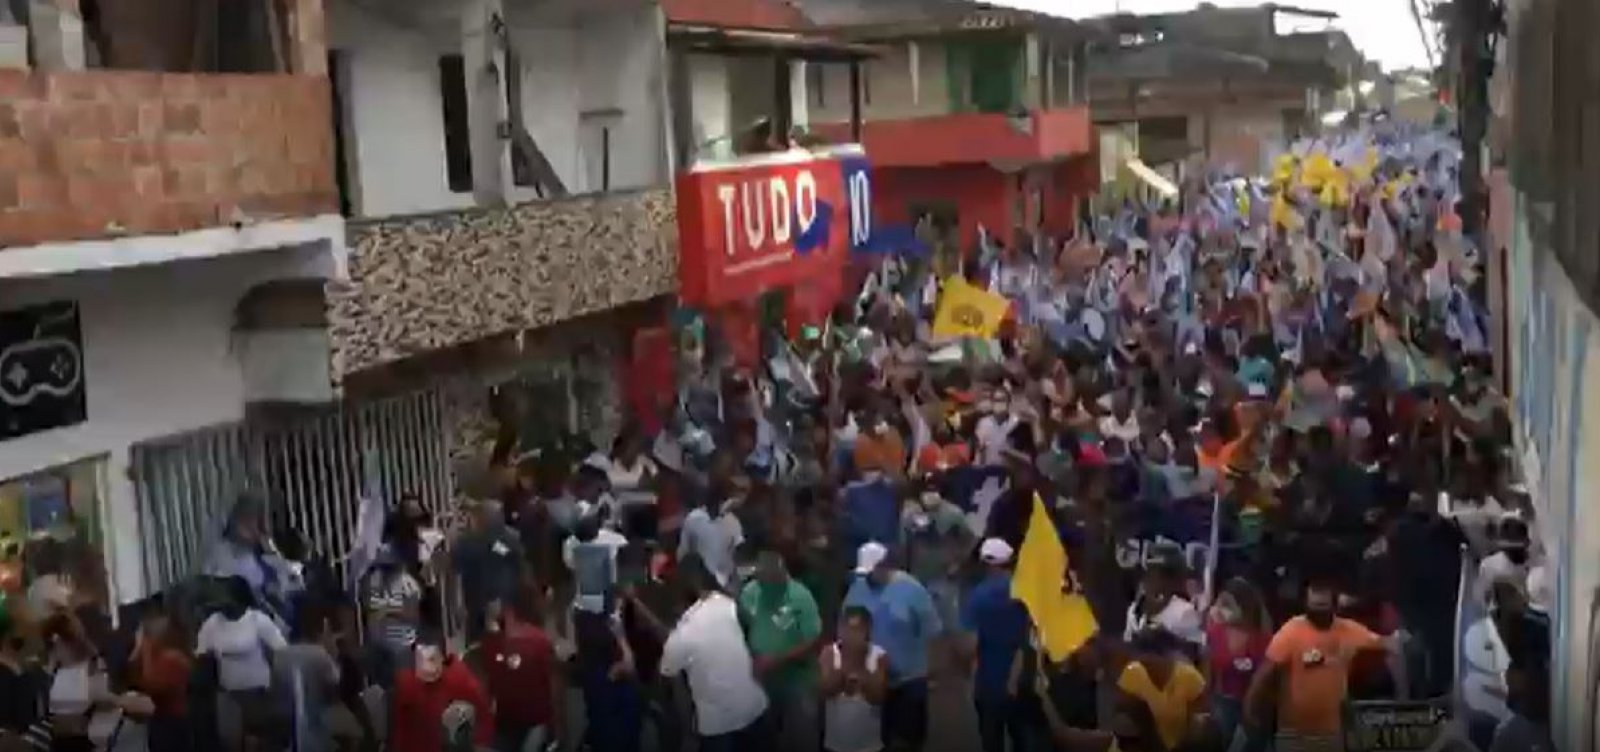 Candidato a prefeito de Porto Seguro promove 'arrastão' com aglomeração; veja vídeo